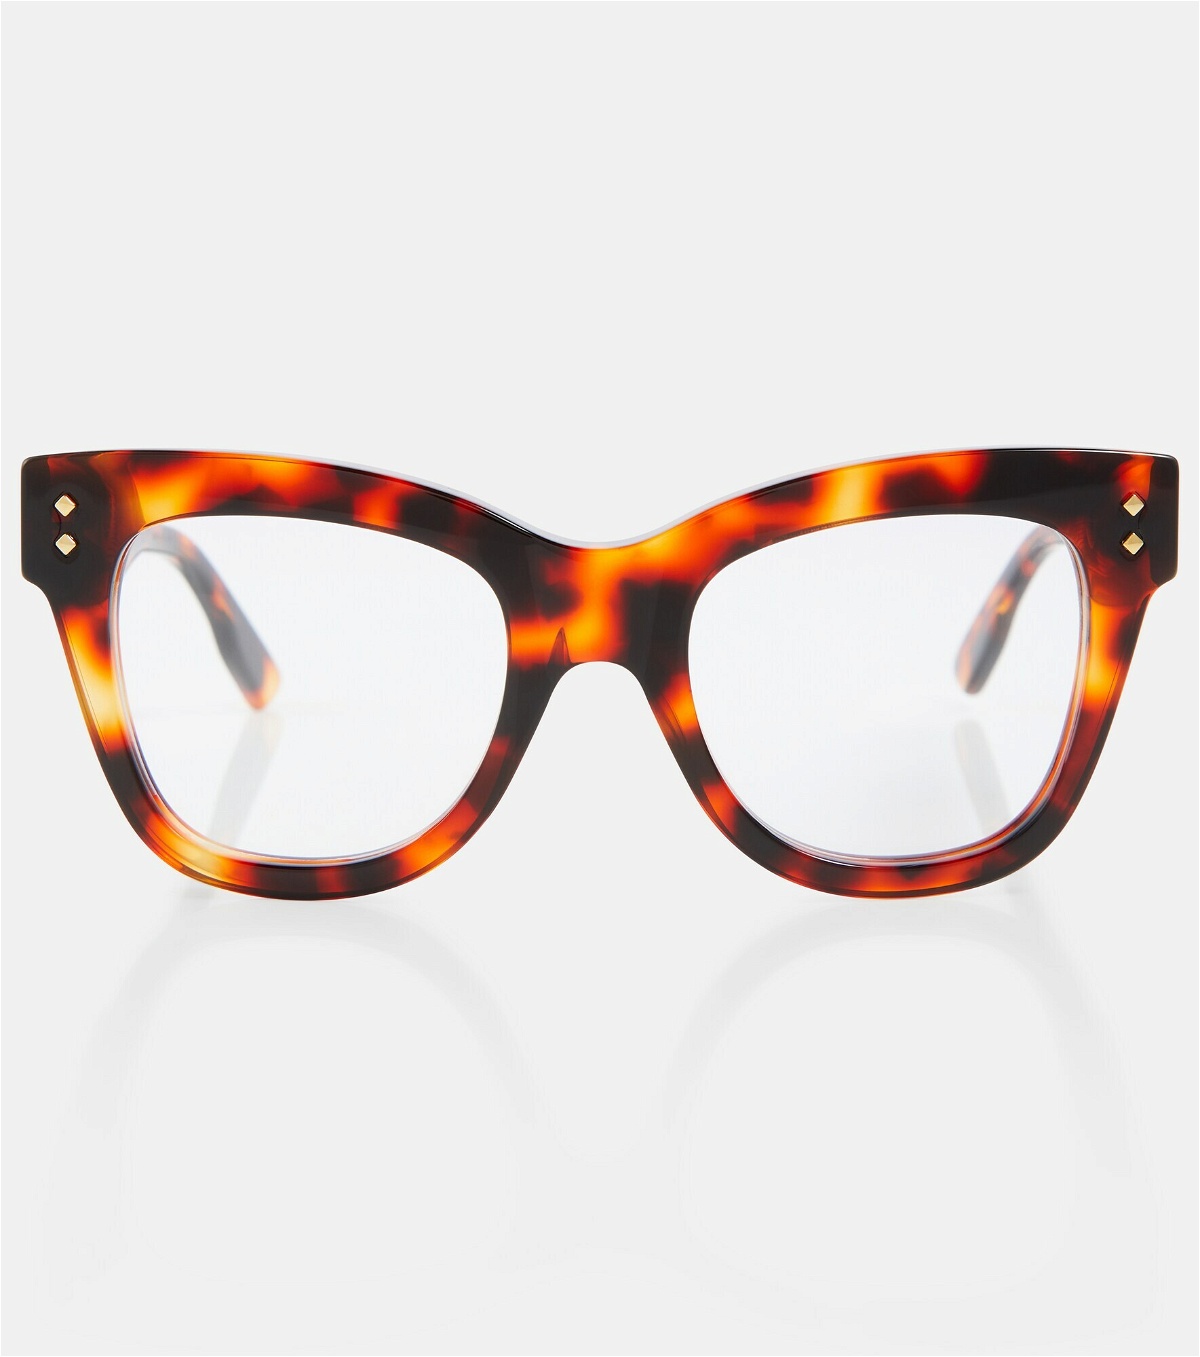 Gucci - Tortoiseshell-effect glasses Gucci